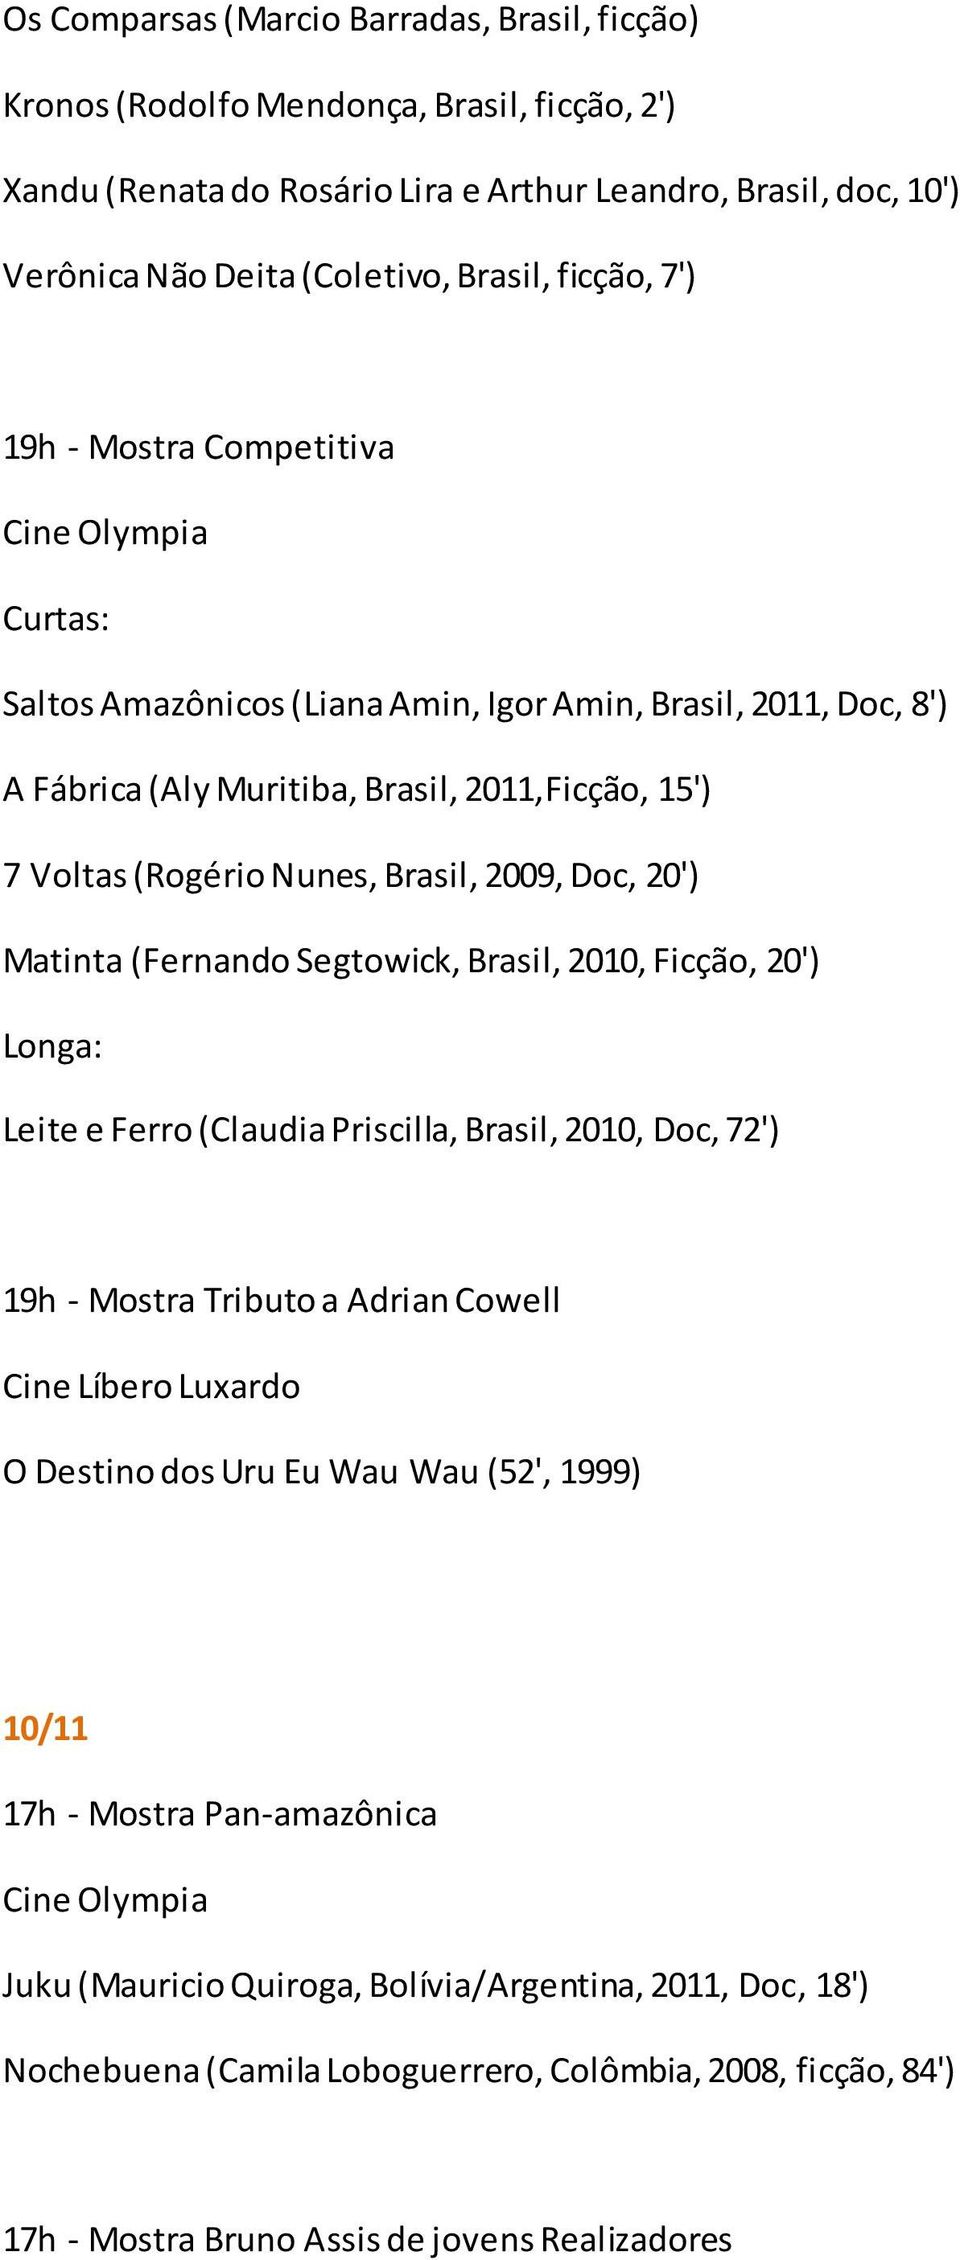 2009, Doc, 20') Matinta (Fernando Segtowick, Brasil, 2010, Ficção, 20') Leite e Ferro (Claudia Priscilla, Brasil, 2010, Doc, 72') O Destino dos Uru Eu Wau Wau (52', 1999) 10/11 17h -